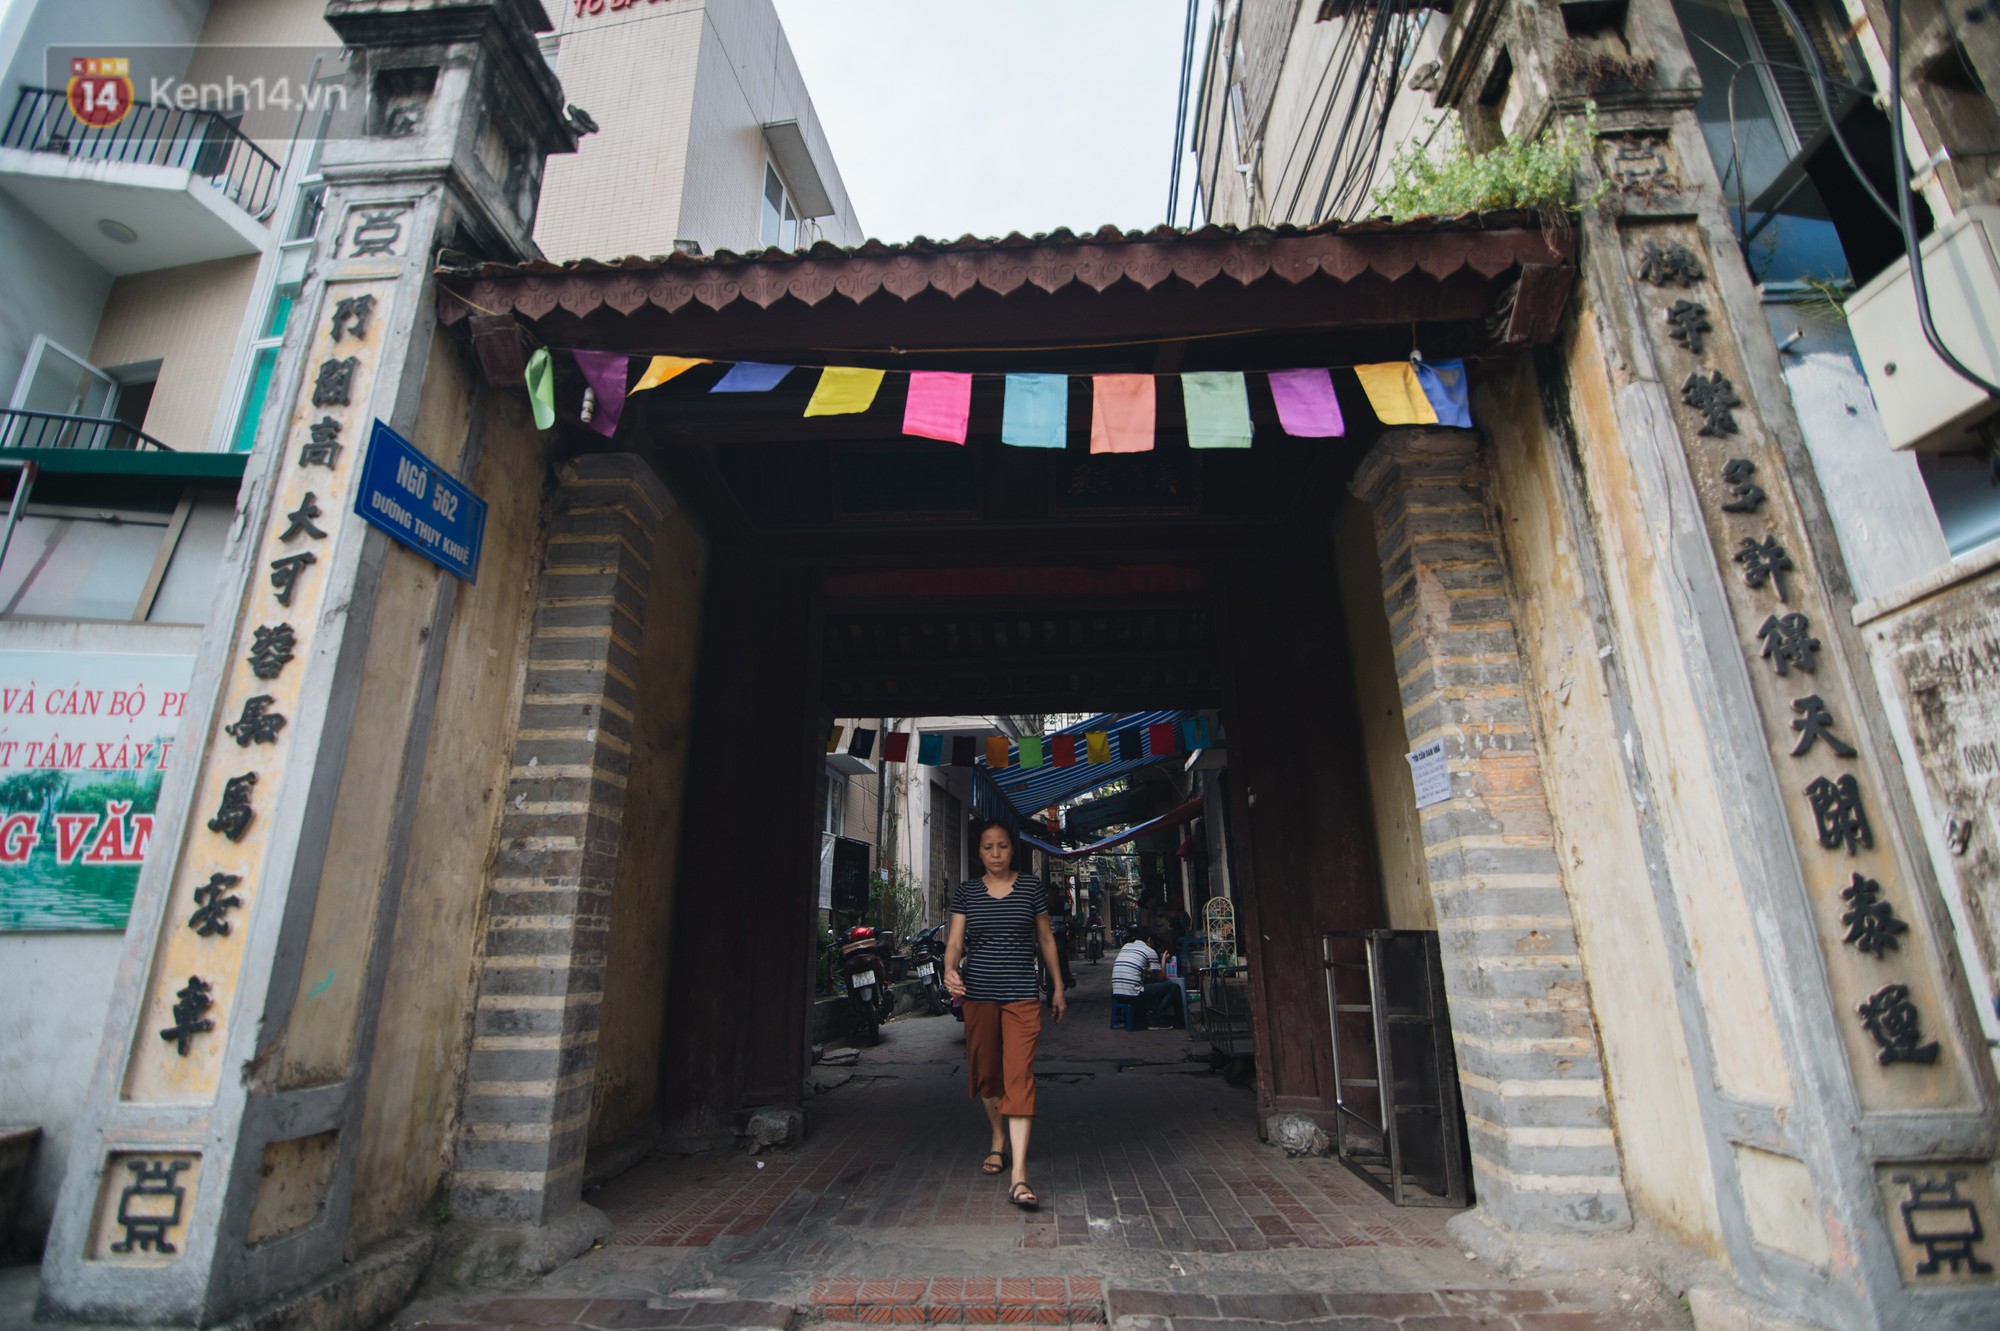 Chuyện về một con phố có nhiều cổng làng nhất Hà Nội: Đưa chân qua cổng phải tôn trọng nếp làng - Ảnh 1.